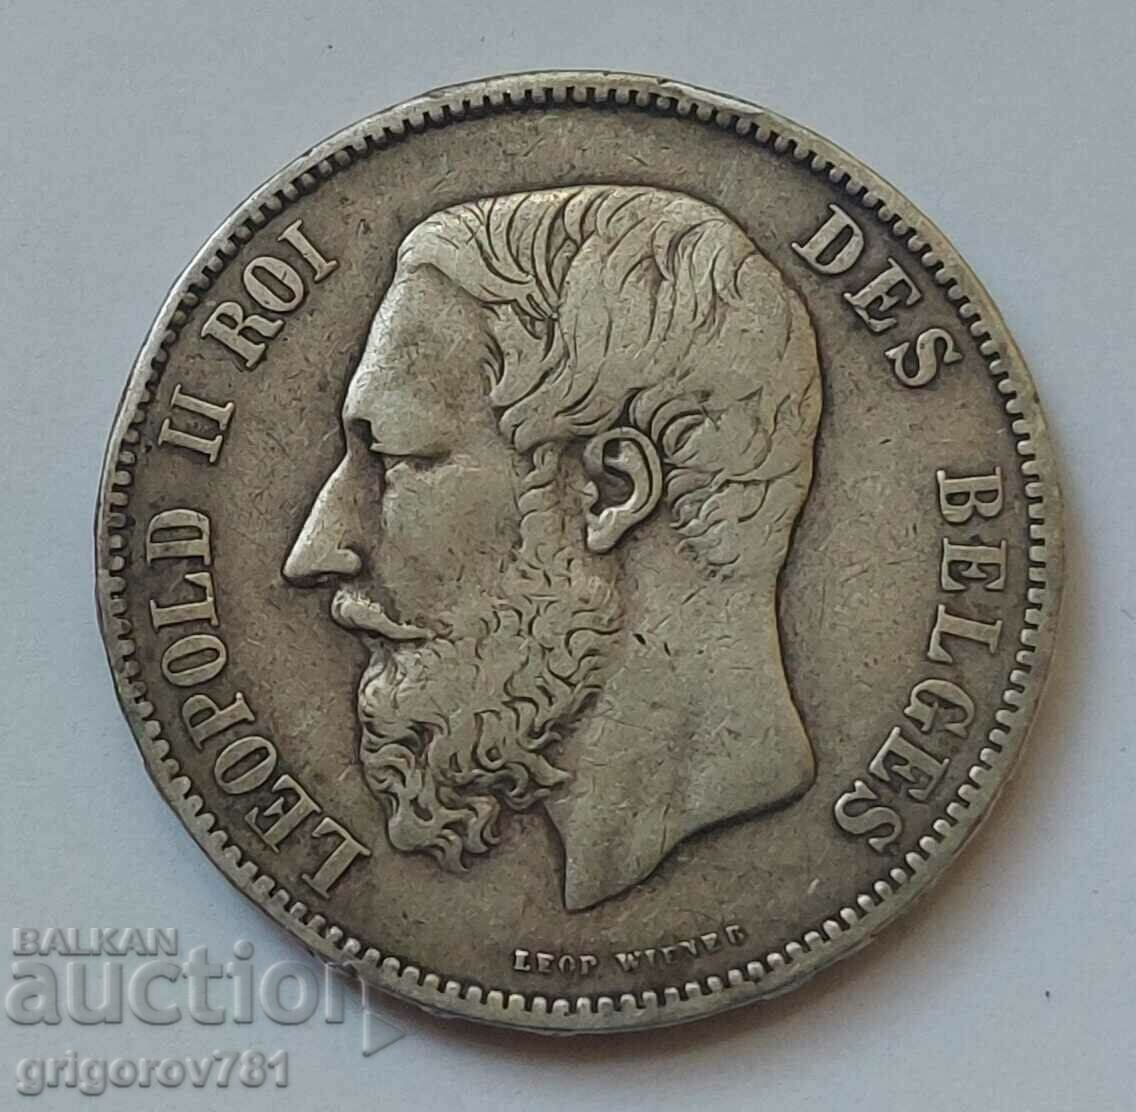 5 Francs Silver Belgium 1868 Silver Coin #159